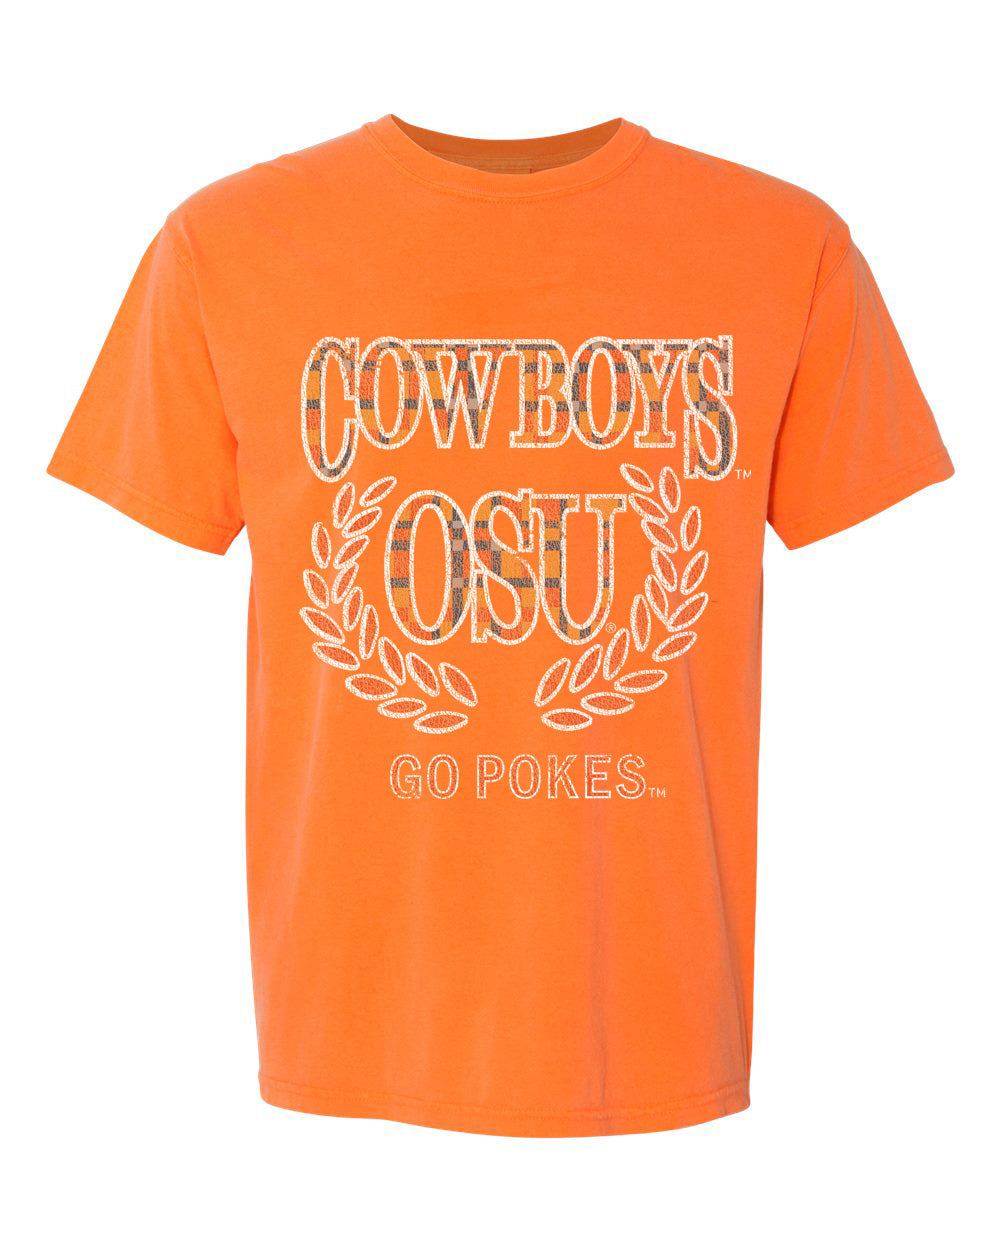 OSU Cowboys Plaid Crest Orange Tee - shoplivylu